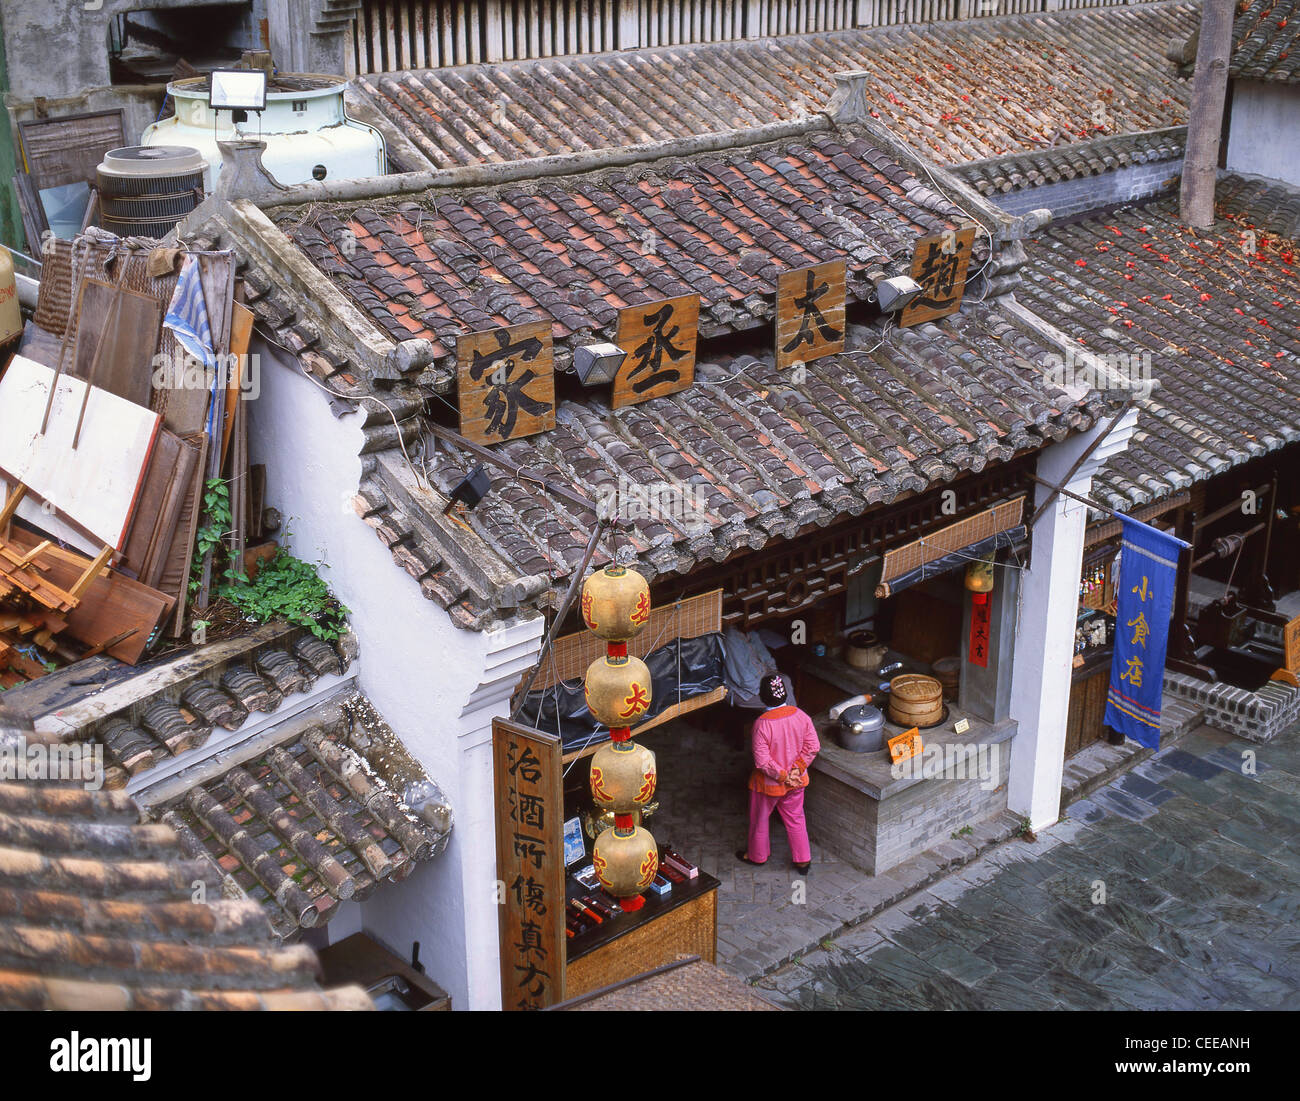 Village de la Dynastie Sung, Kowloon, Hong Kong, République populaire de Chine Banque D'Images